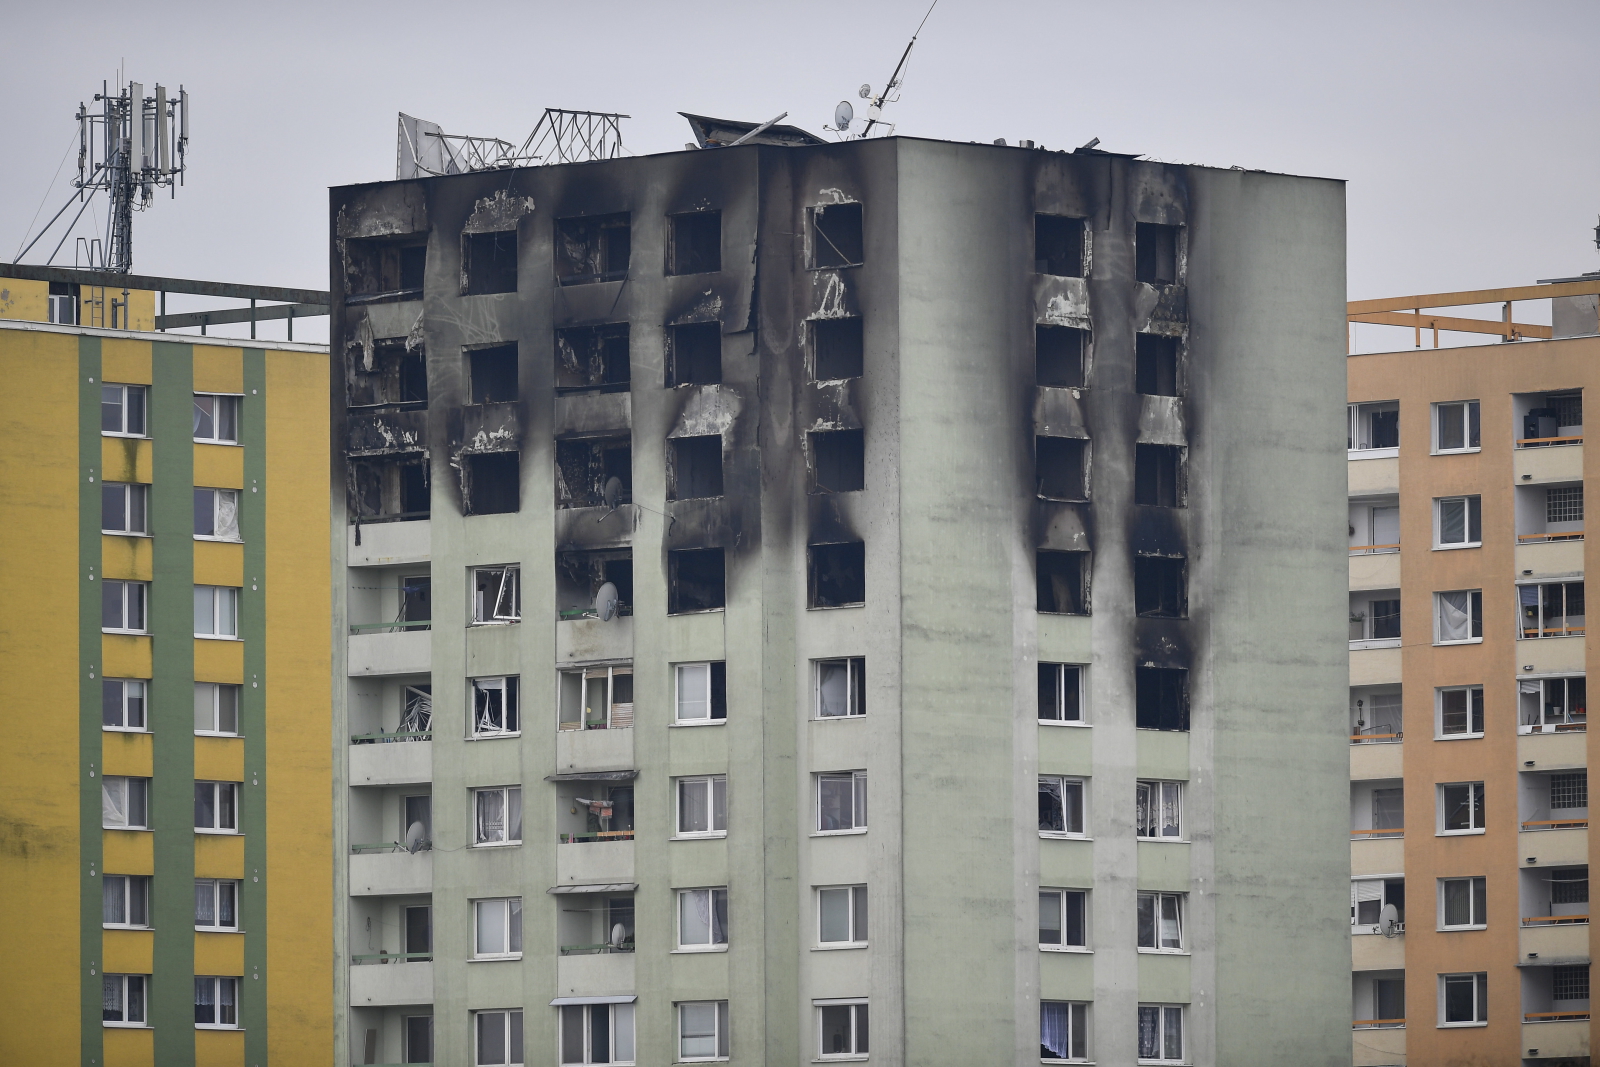 Słowacja - wieżowiec zniszczony po wybuchu gazu
EPA/ZSOLT CZEGLEDI 